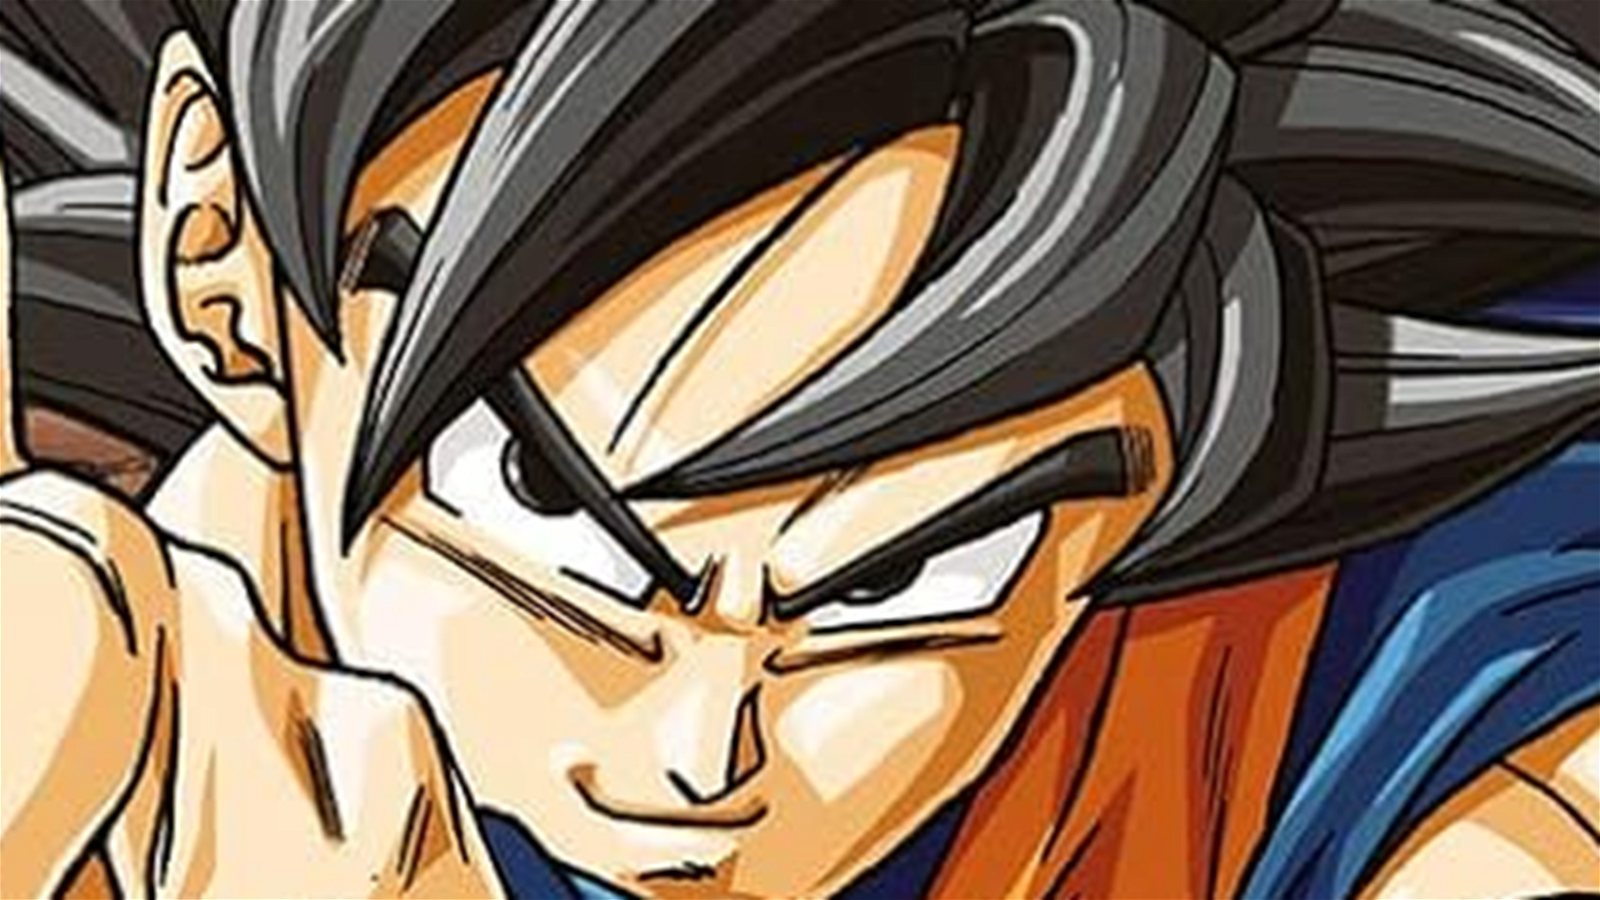 Immagine di Dragon Ball Super, Akira Toriyama ha interamente scritto gli ultimi capitoli